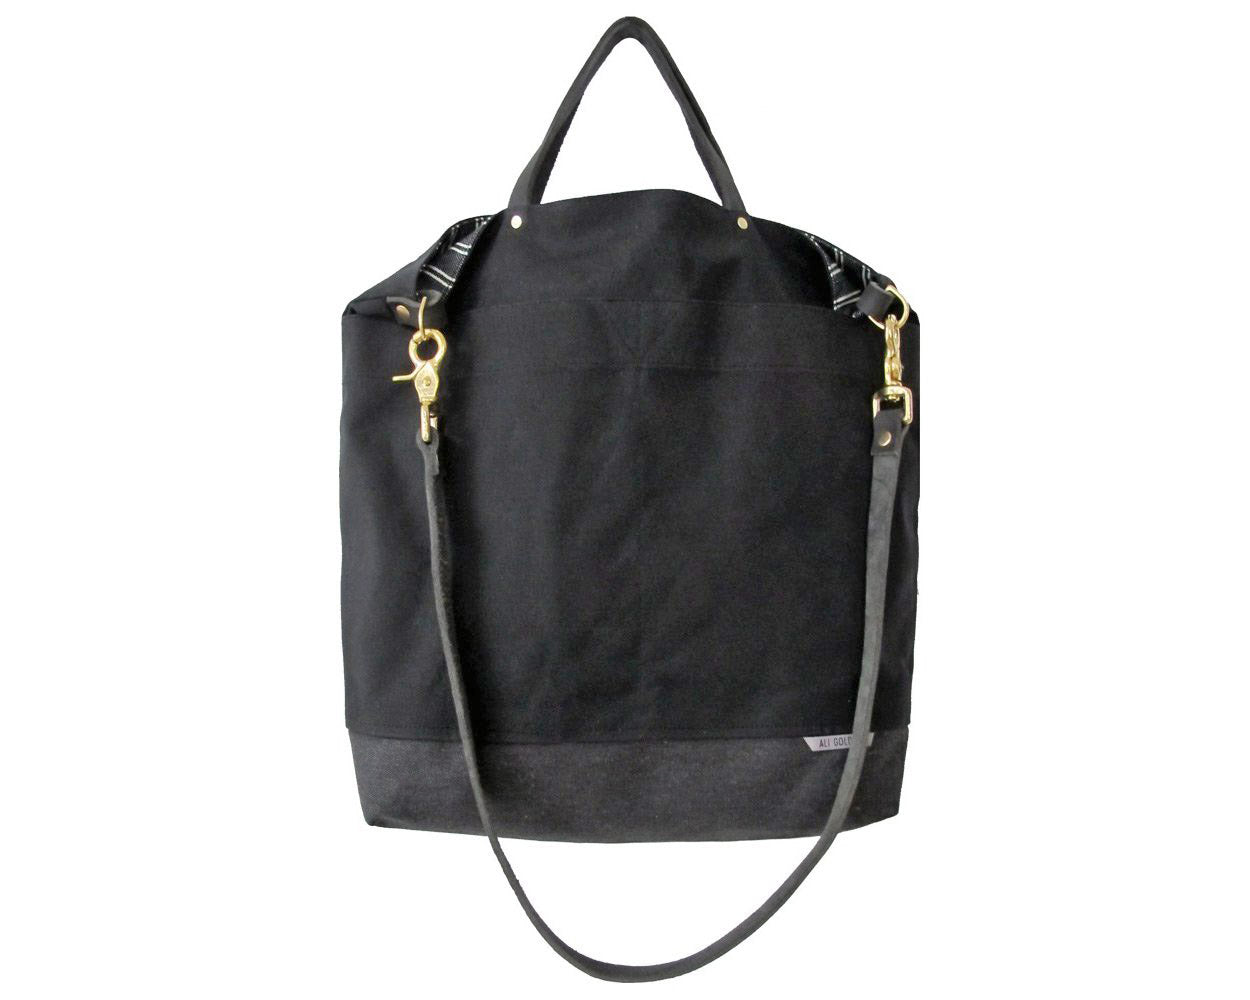 Ali Golden | Black + Black Stripe Reversible Bag | Firecracker